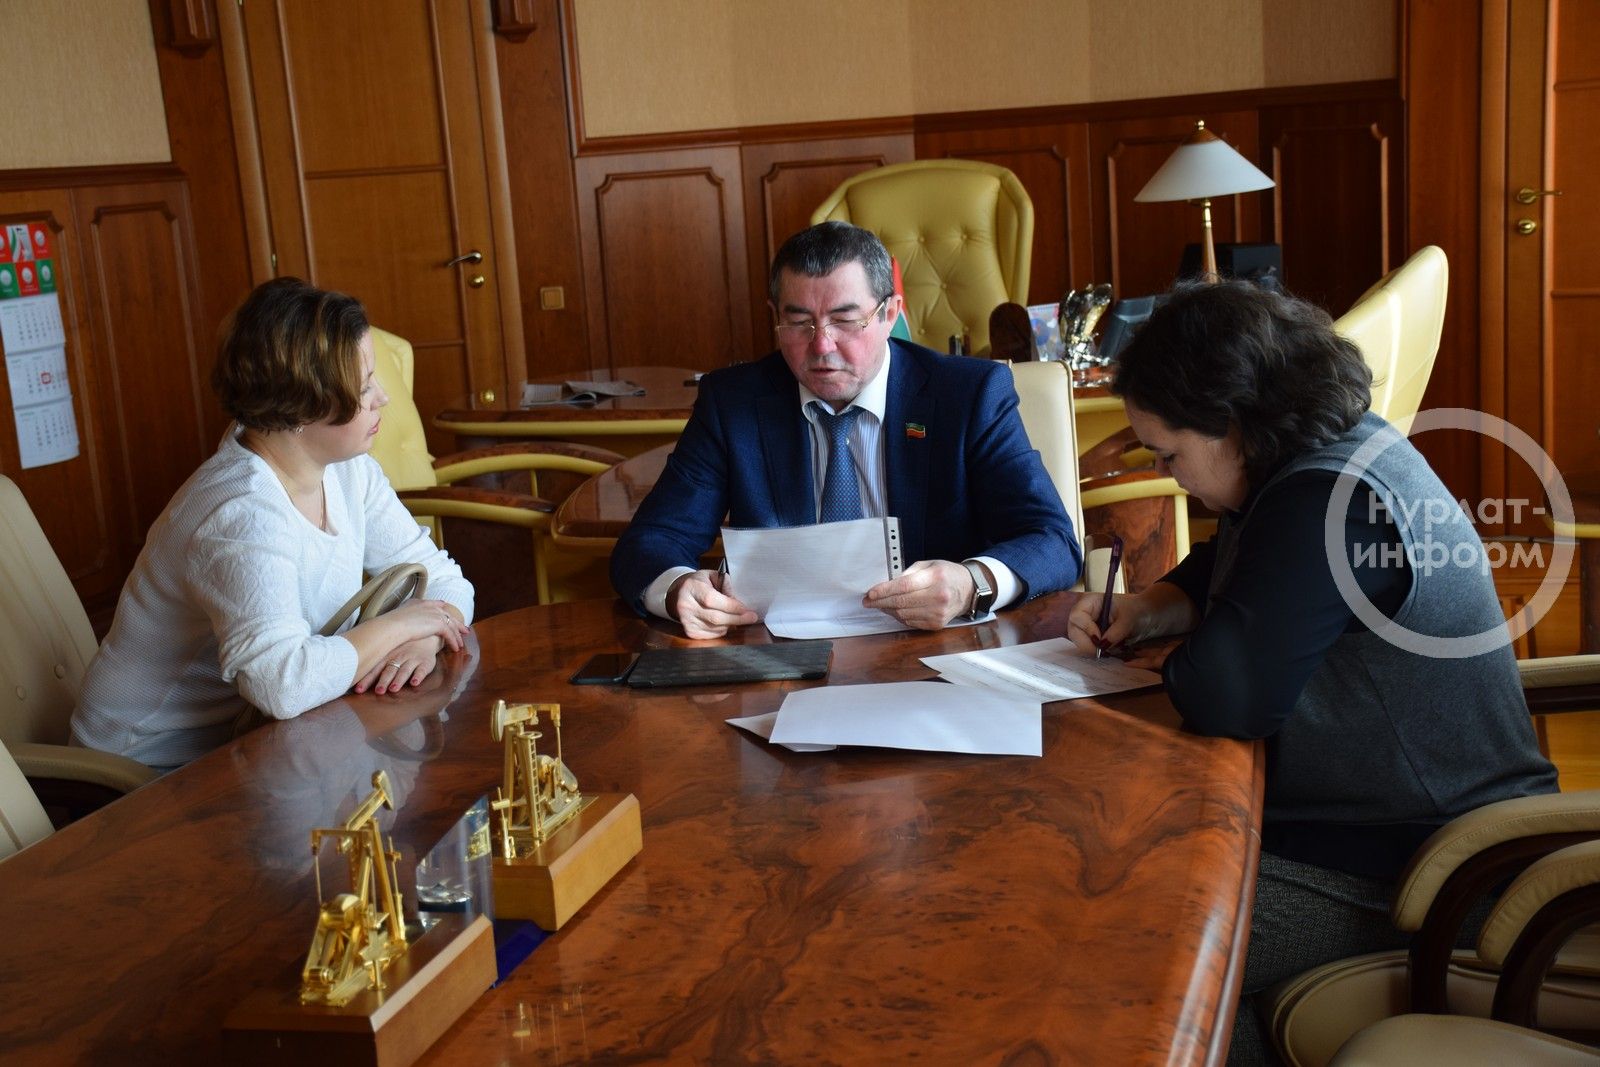 Нурлатцы поделились своими проблемами с депутатом Государственного Совета Татарстана